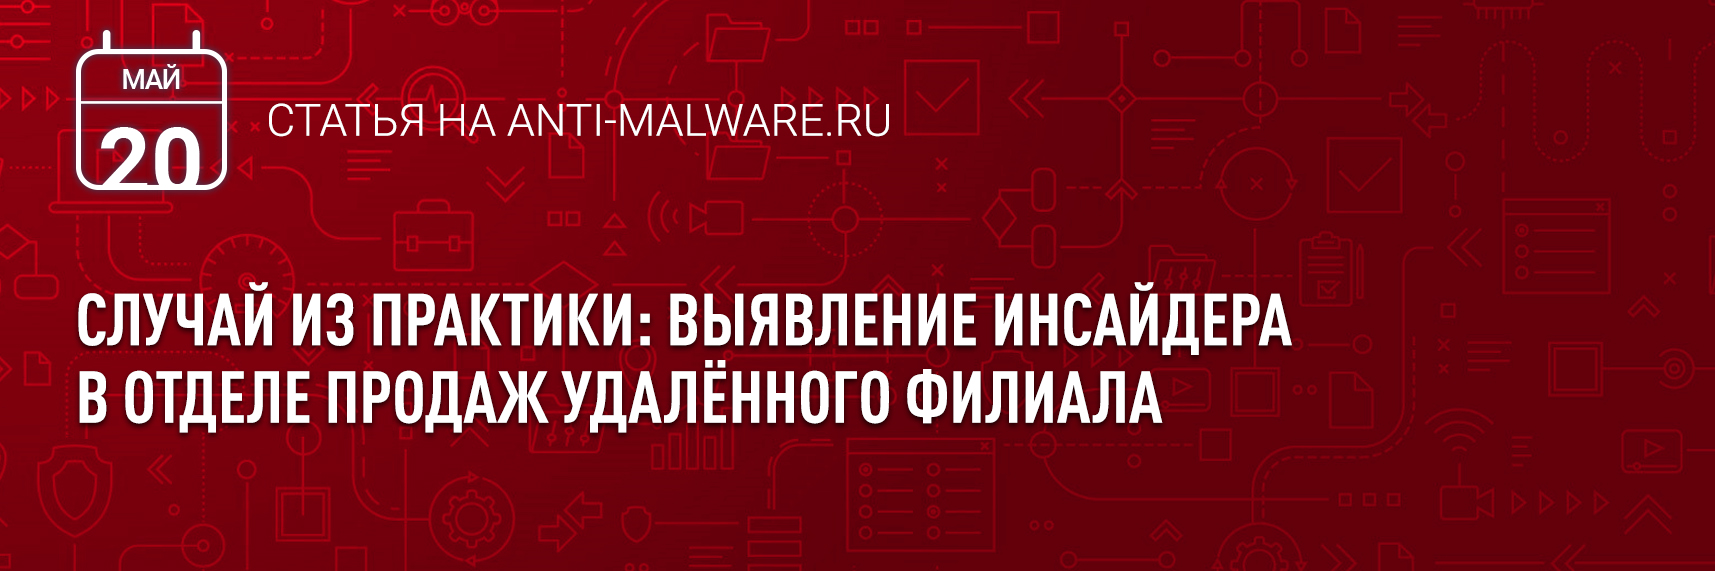 [Anti-Malware] Случай из практики: выявление инсайдера в отделе продаж удалённого филиала